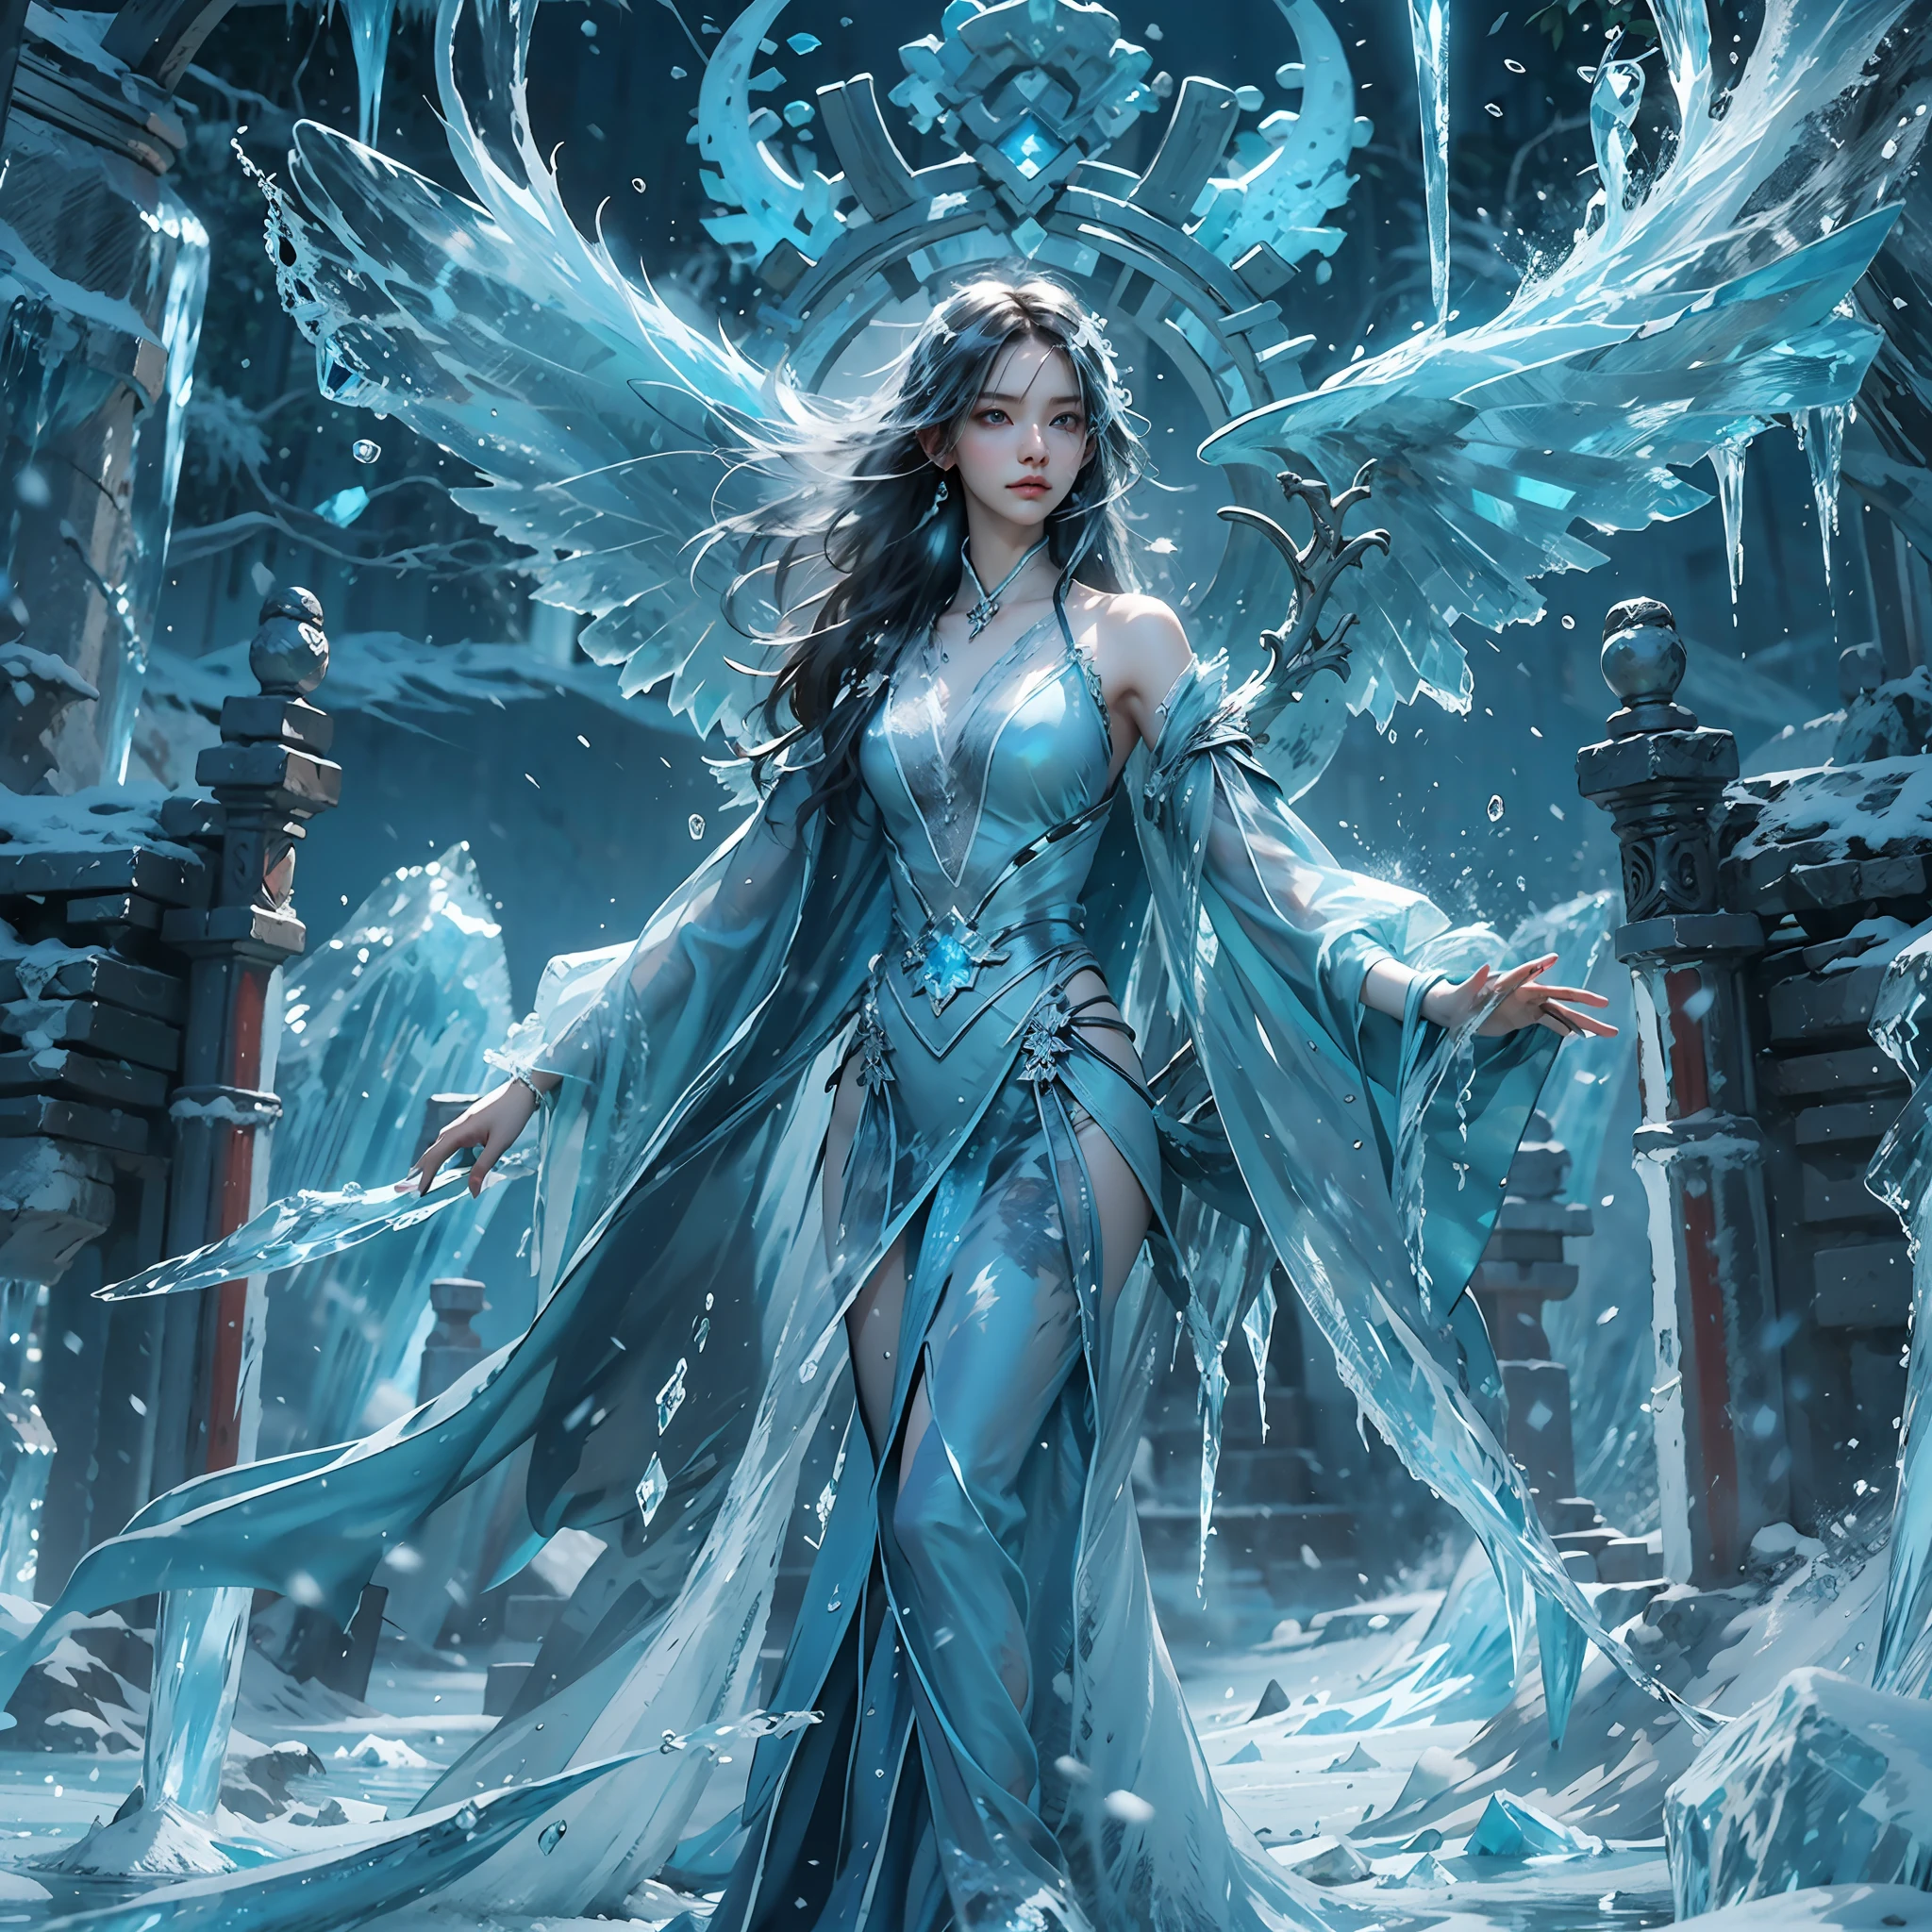 (((1個女孩)))，皇水，魔術師，（寬鬆連身裙：1.5），（完美的臉部特徵：1.4），（藍色絲綢長袍），（神秘的魔法陣：1.2），藍色發光，（冰霜之翼），(((強大的冰系魔法)))，(((冰柱)))，高聳於風景之上，藍光冷光，(((冰暴)))，風，((飛雪冰雪))，驚人的結果，,最佳品质者,傑作,超高解析度,詳細的,复杂的细节,8K分辨率,8KUCG壁紙,高動態範圍,水藍色,魔法陣,电影灯光效果,明暗對比，射線追蹤、NVIDIA RTX